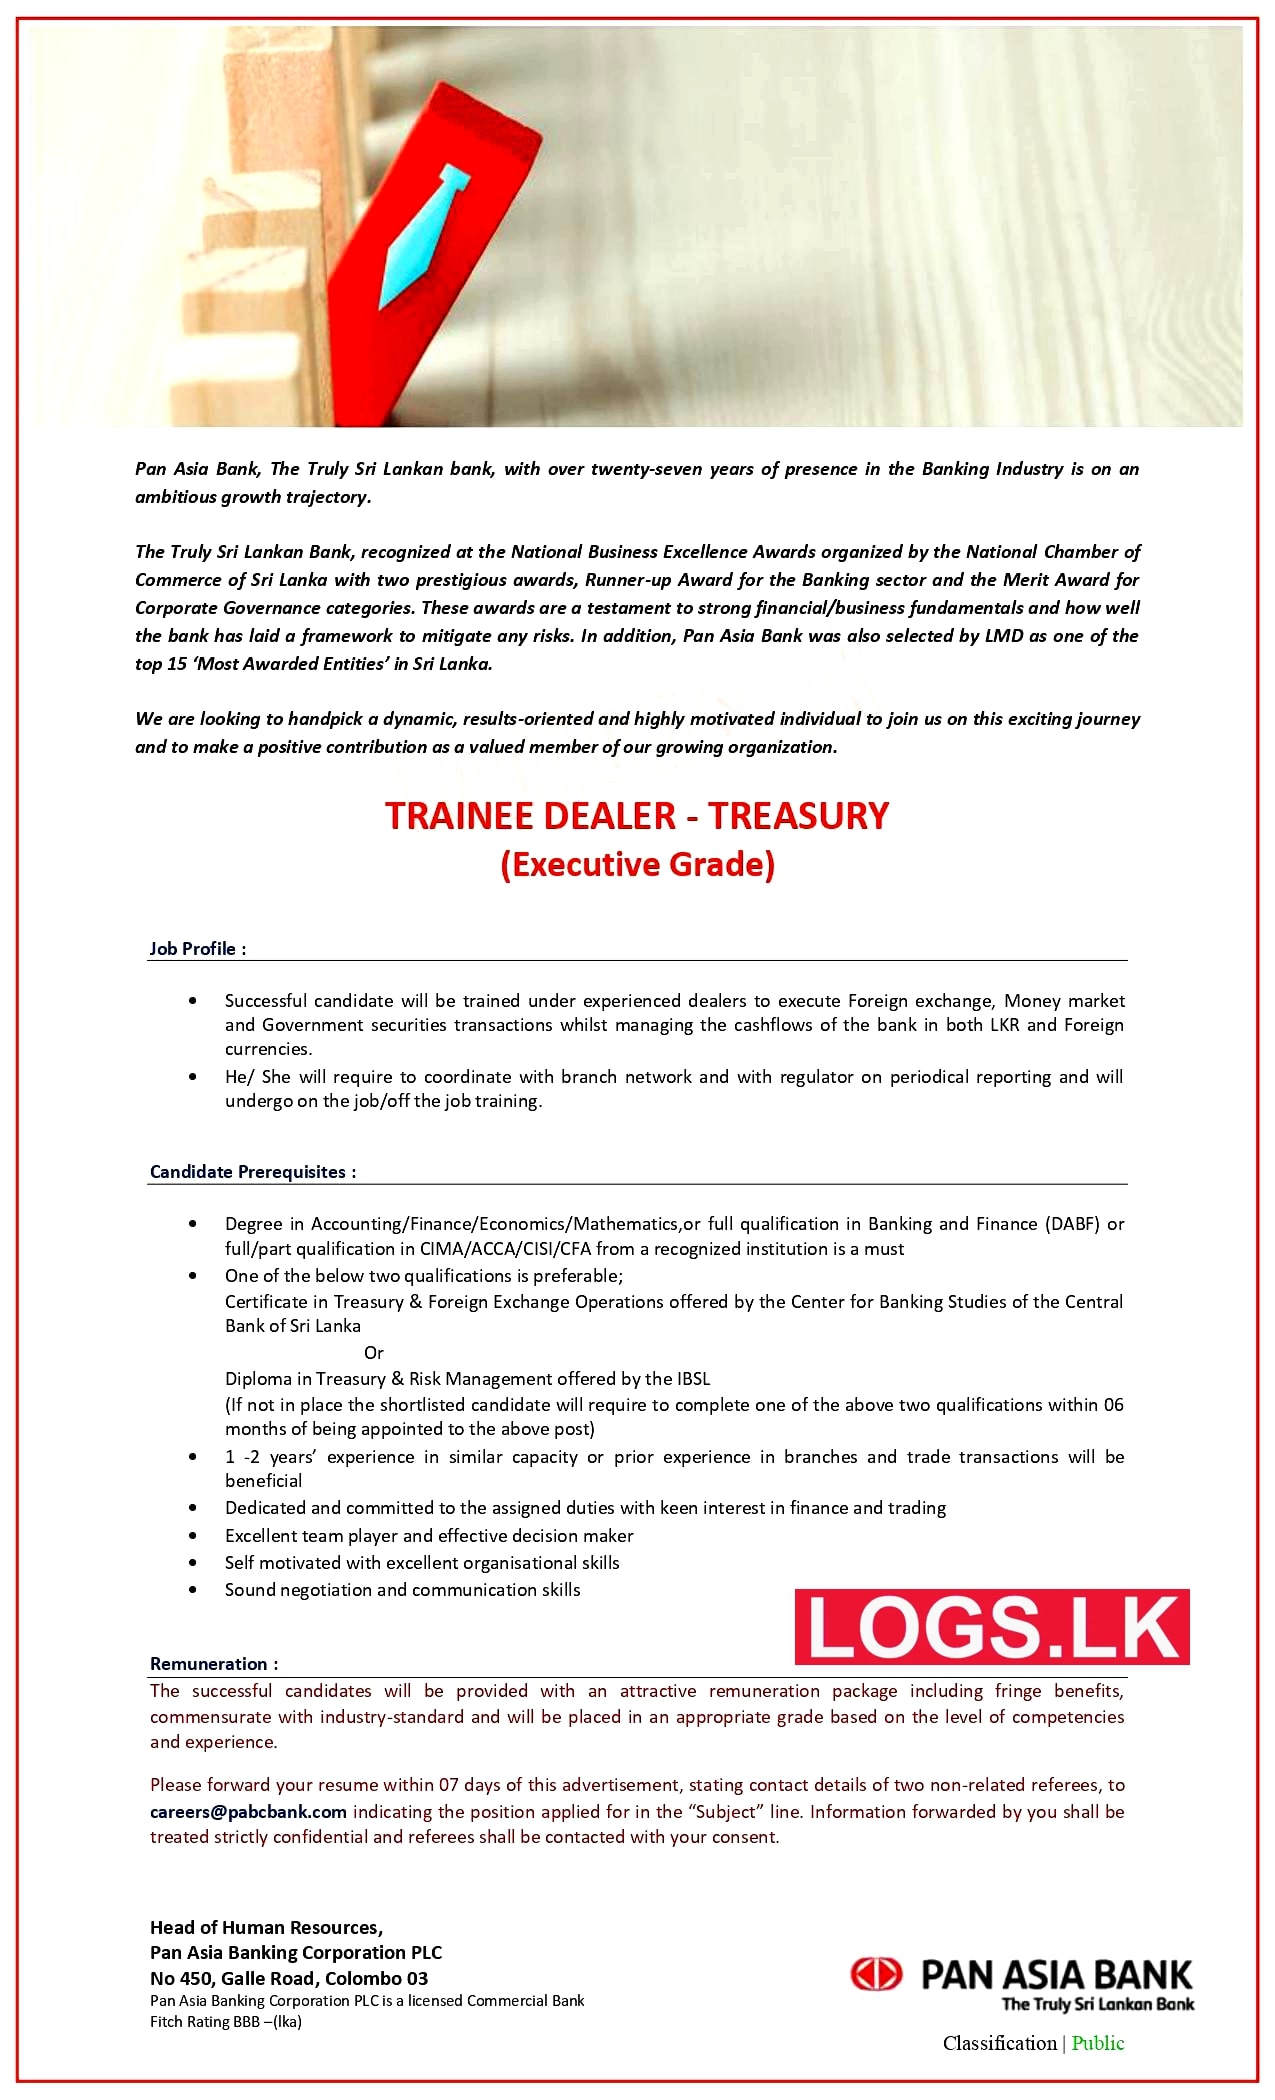 Trainee Dealer - Treasury Job Vacancy in Pan Asia Bank Jobs Vacancies